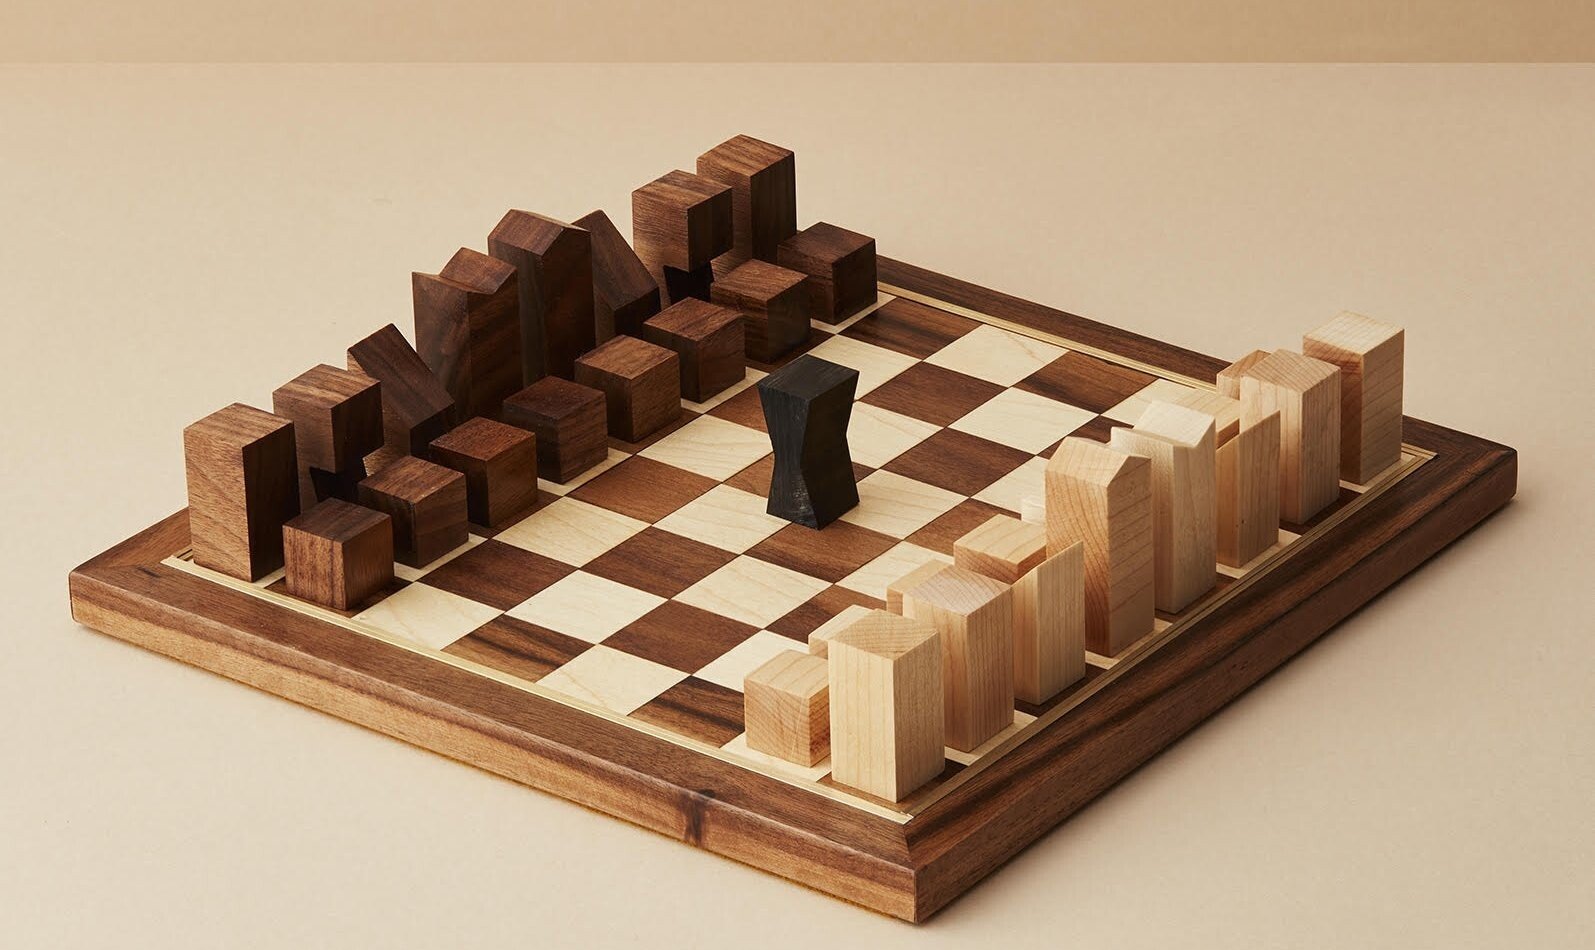 Šachy, domino i ruleta. Designové hry, které budete chtít do své sbírky